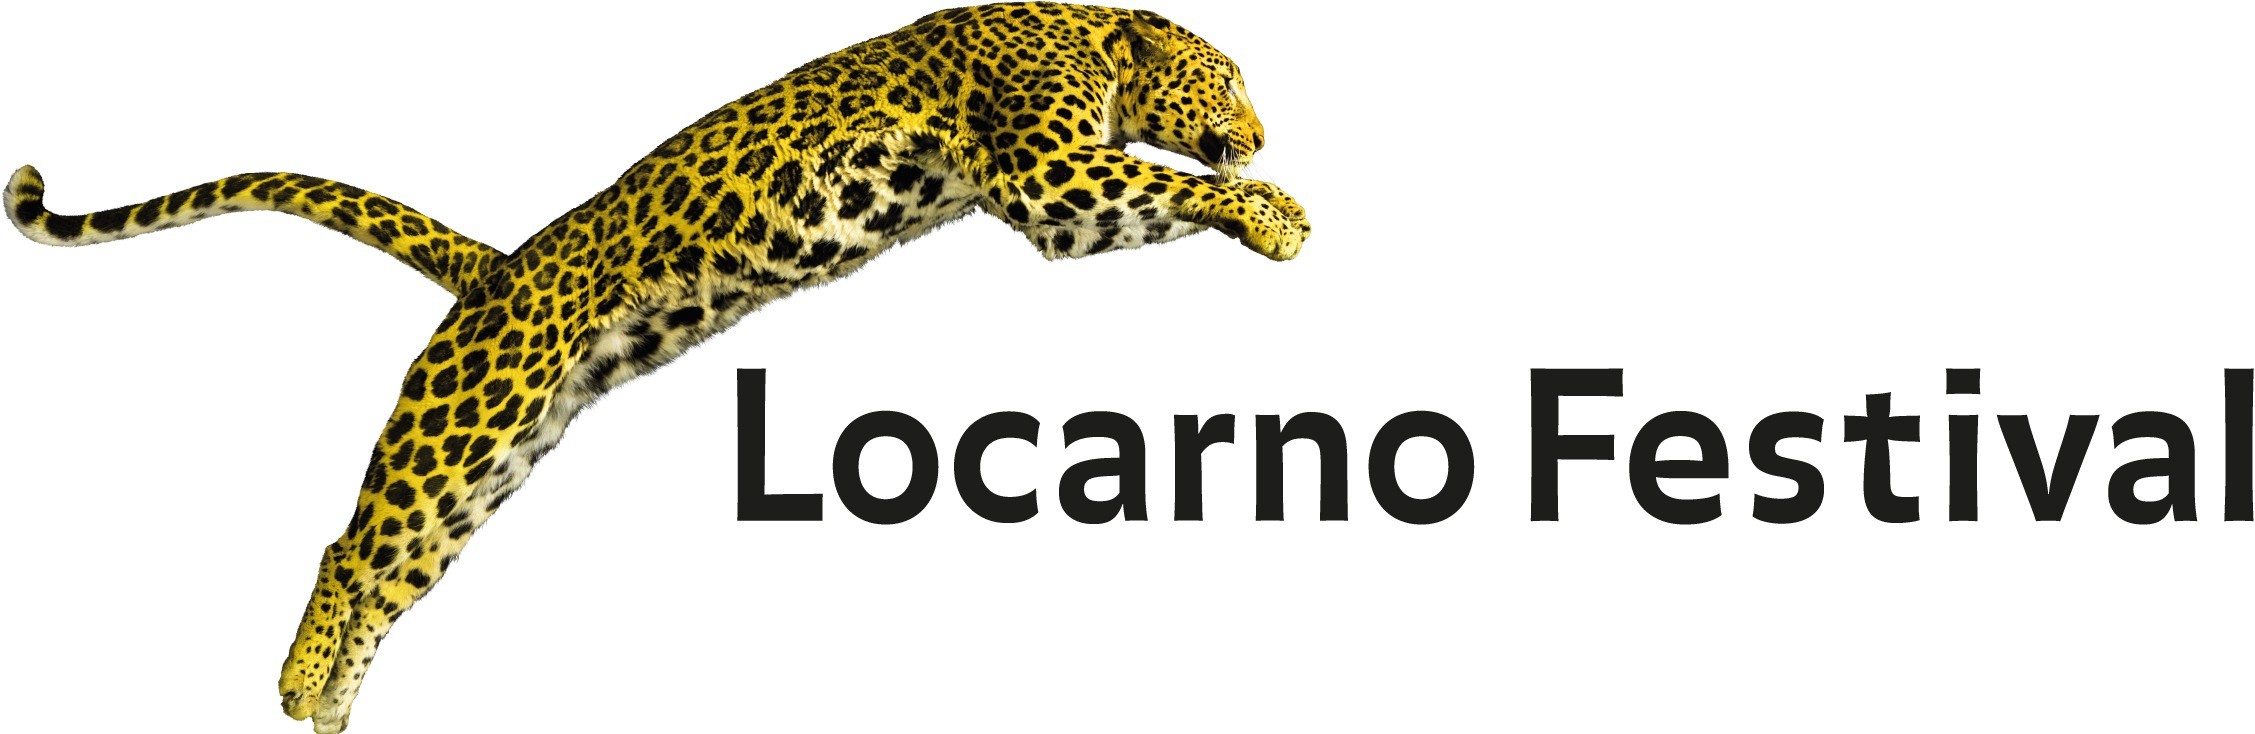 Locarno Film Festival award logo